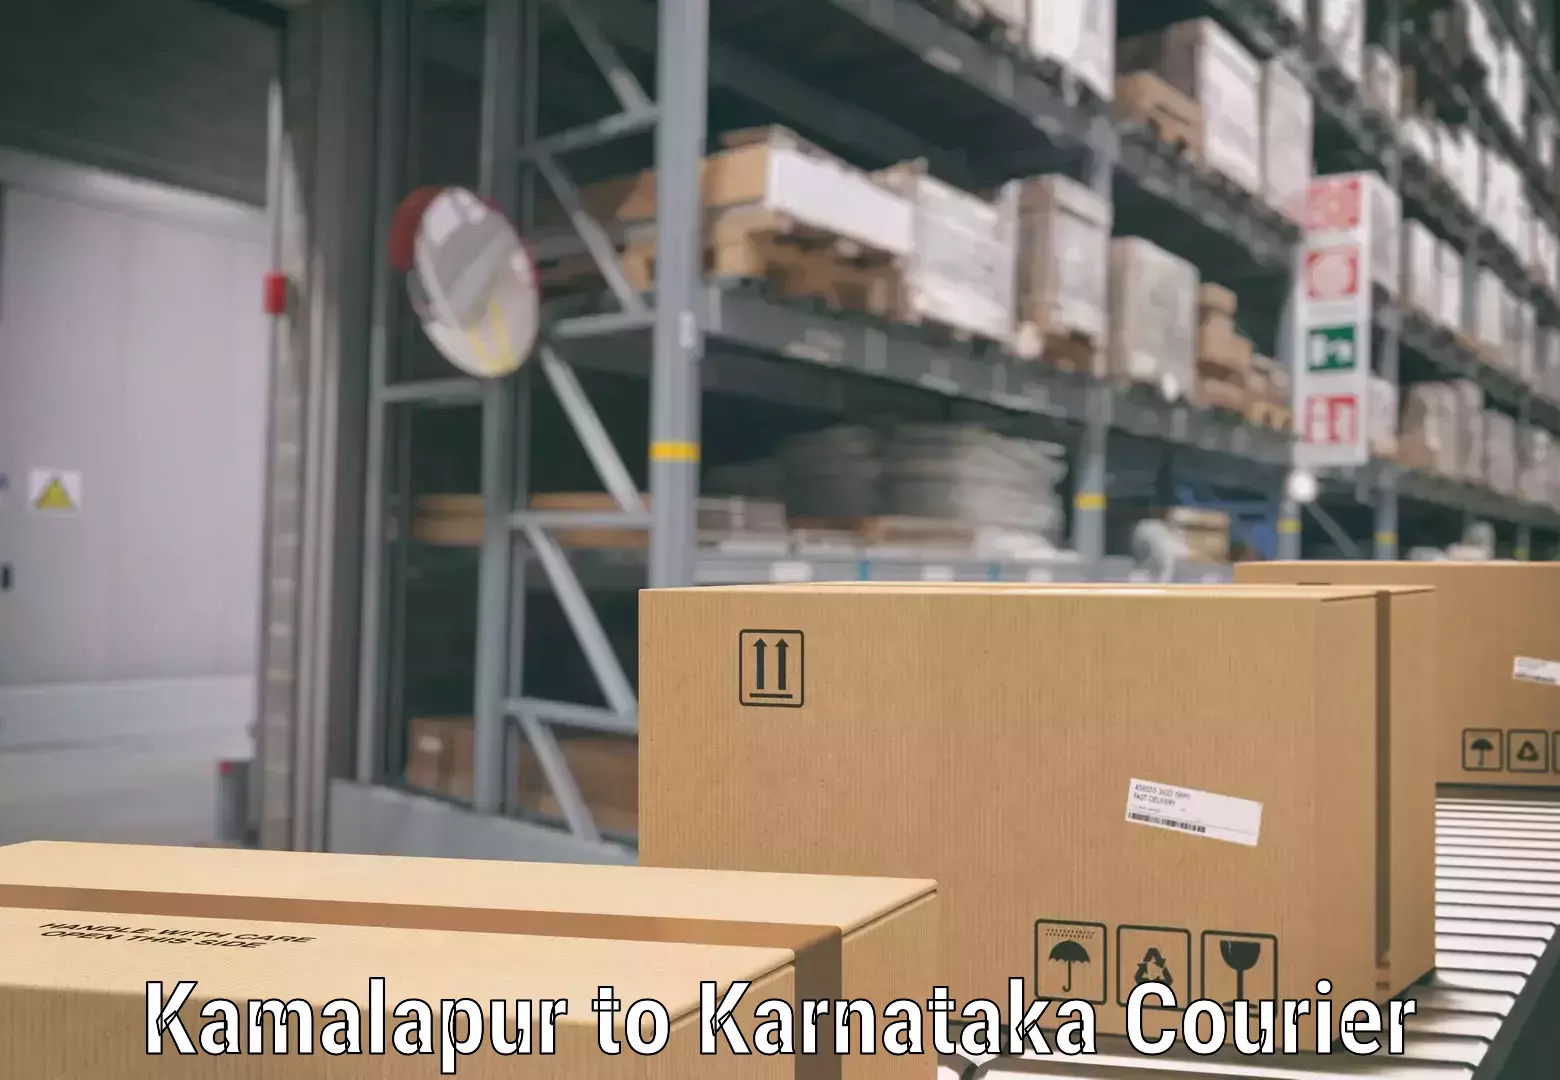 Baggage delivery technology Kamalapur to Karnataka